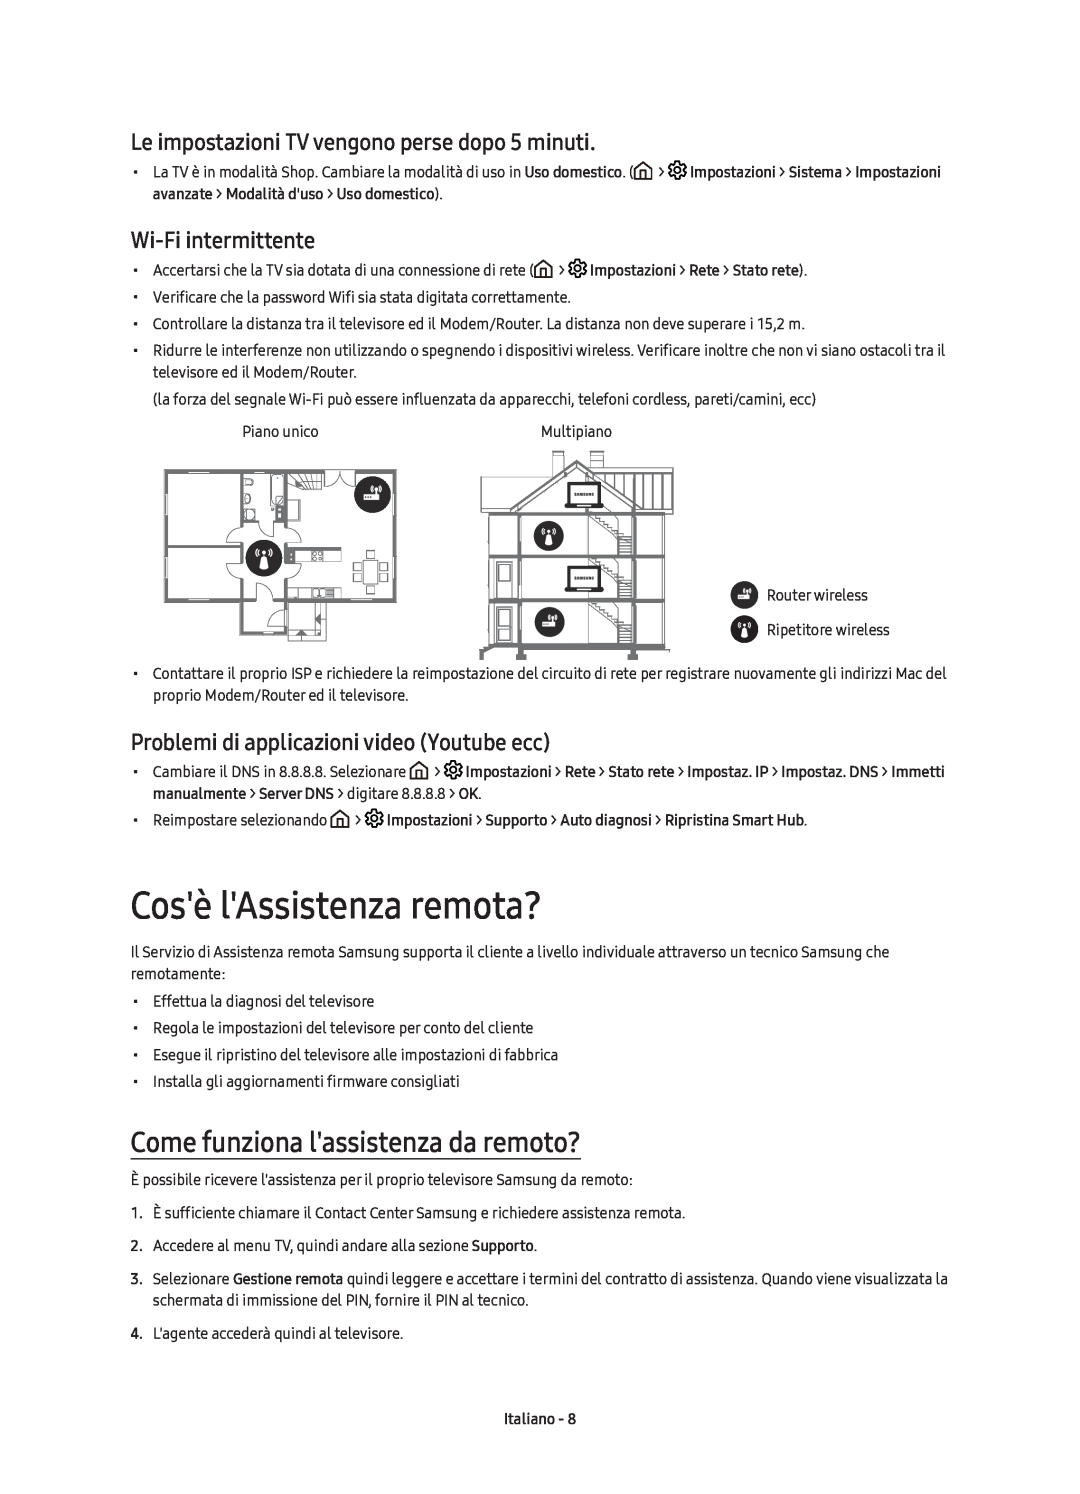 Samsung UE55KS7590UXZG manual Cosè lAssistenza remota?, Come funziona lassistenza da remoto?, Wi-Fi intermittente, Italiano 